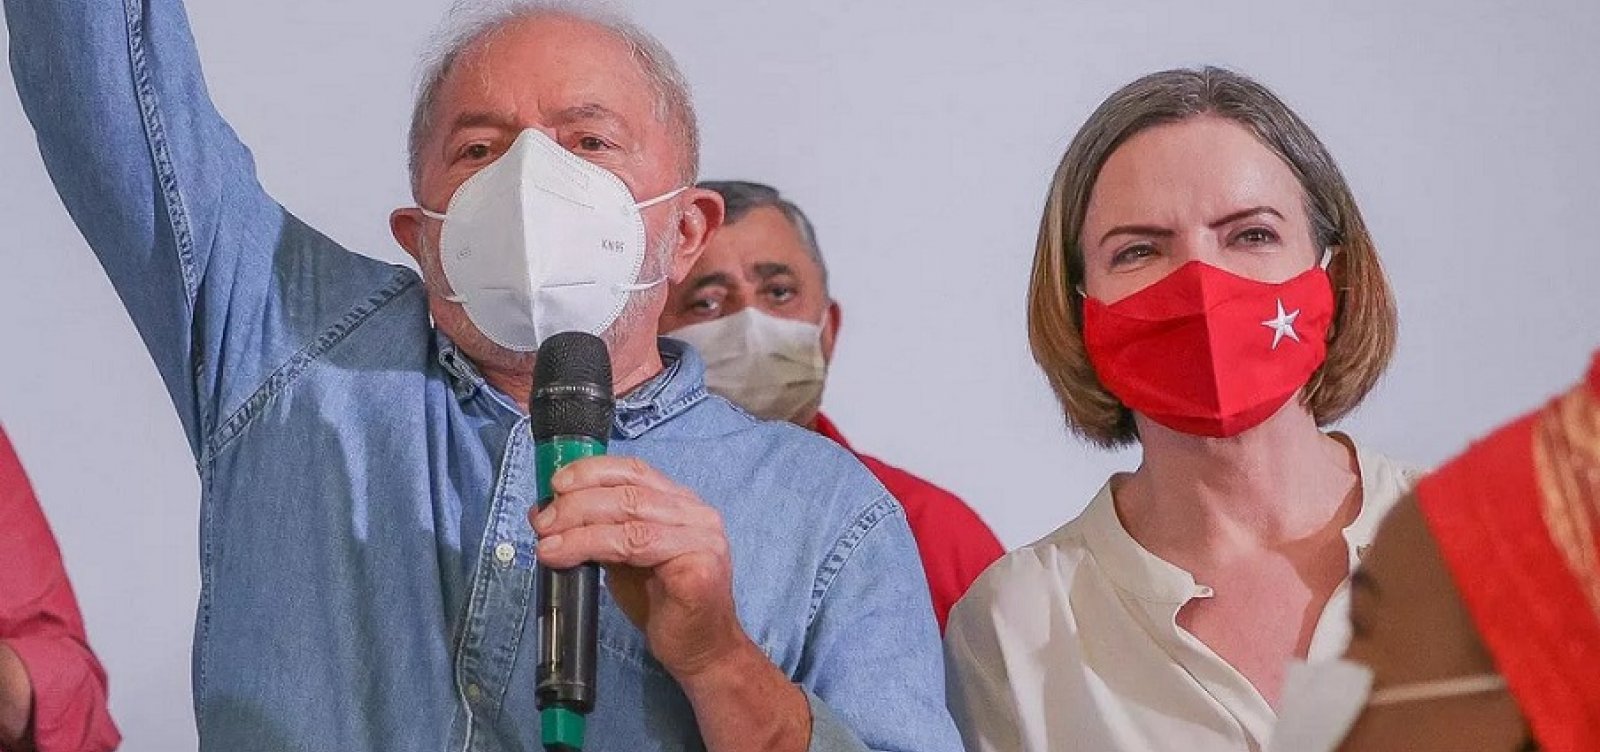 Lula e Gleisi falam em revogar reforma trabalhista de Temer